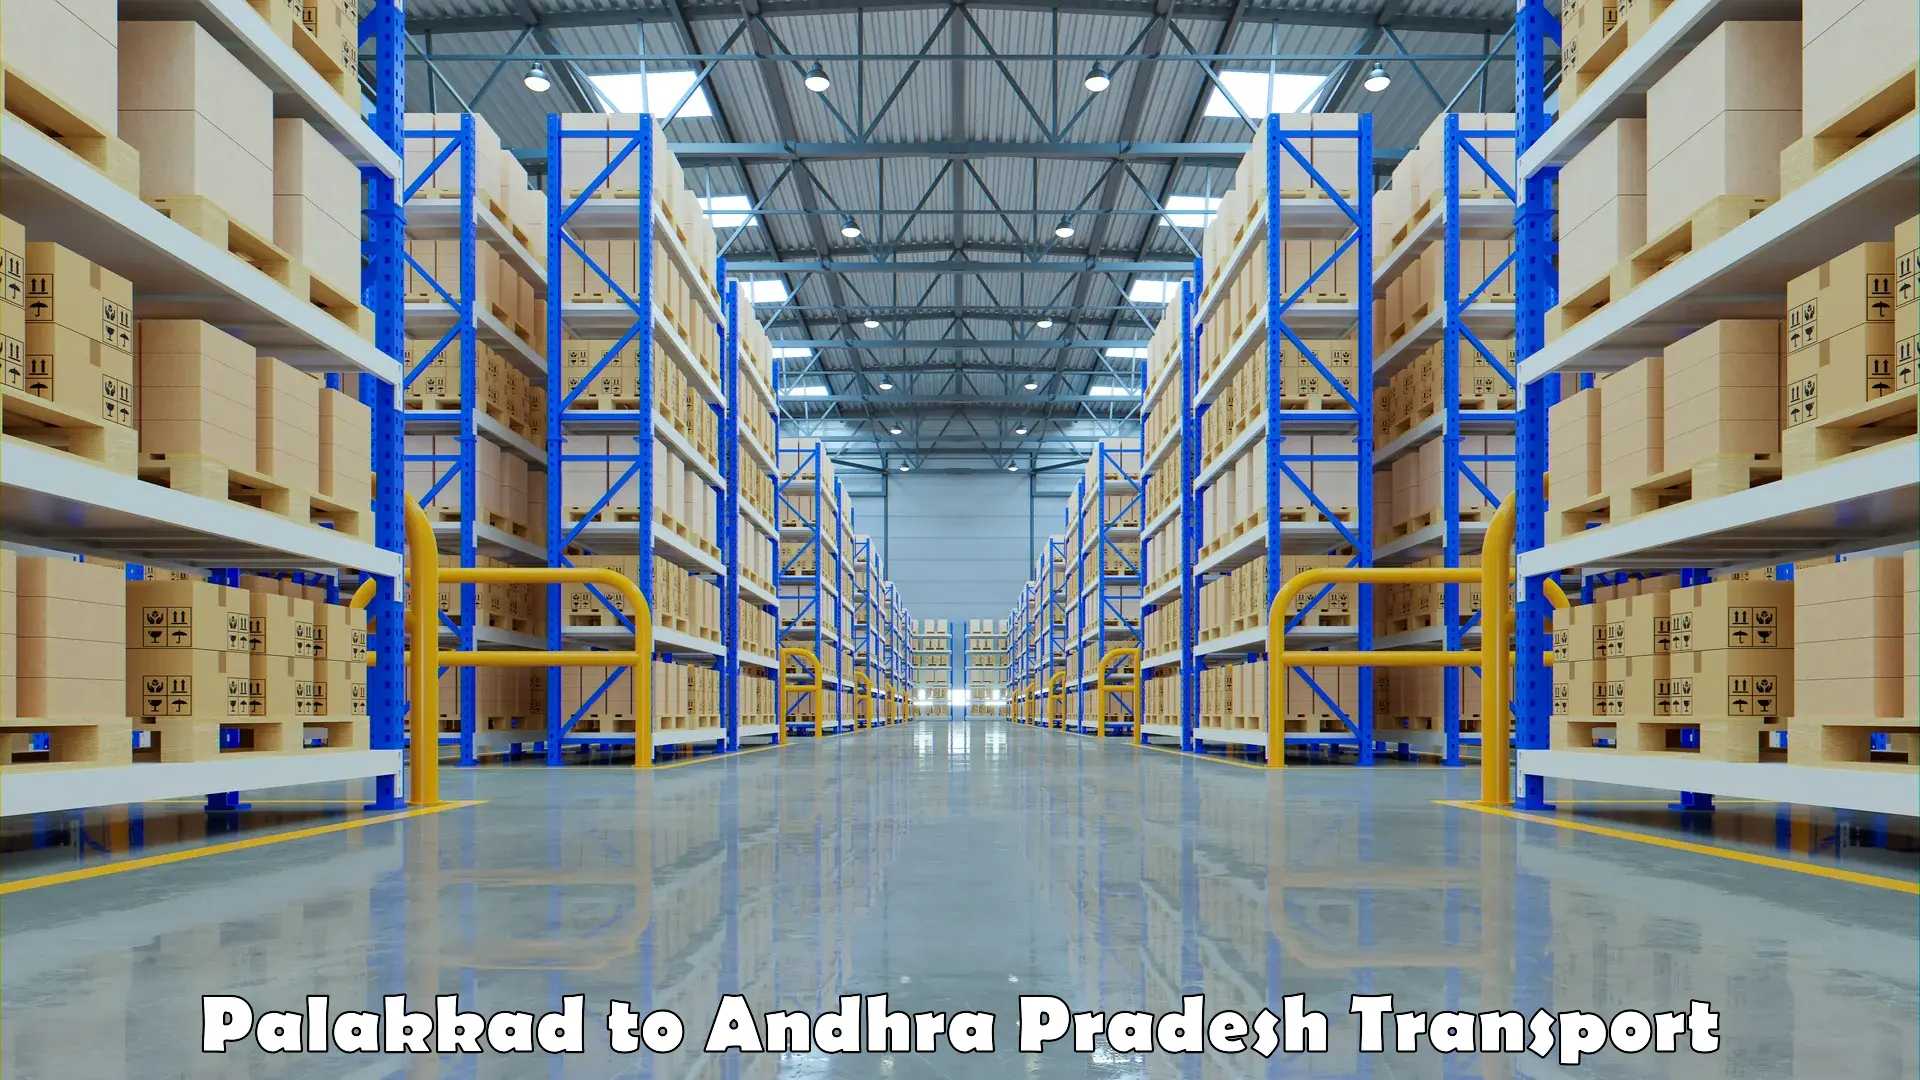 Daily transport service Palakkad to Andhra Pradesh